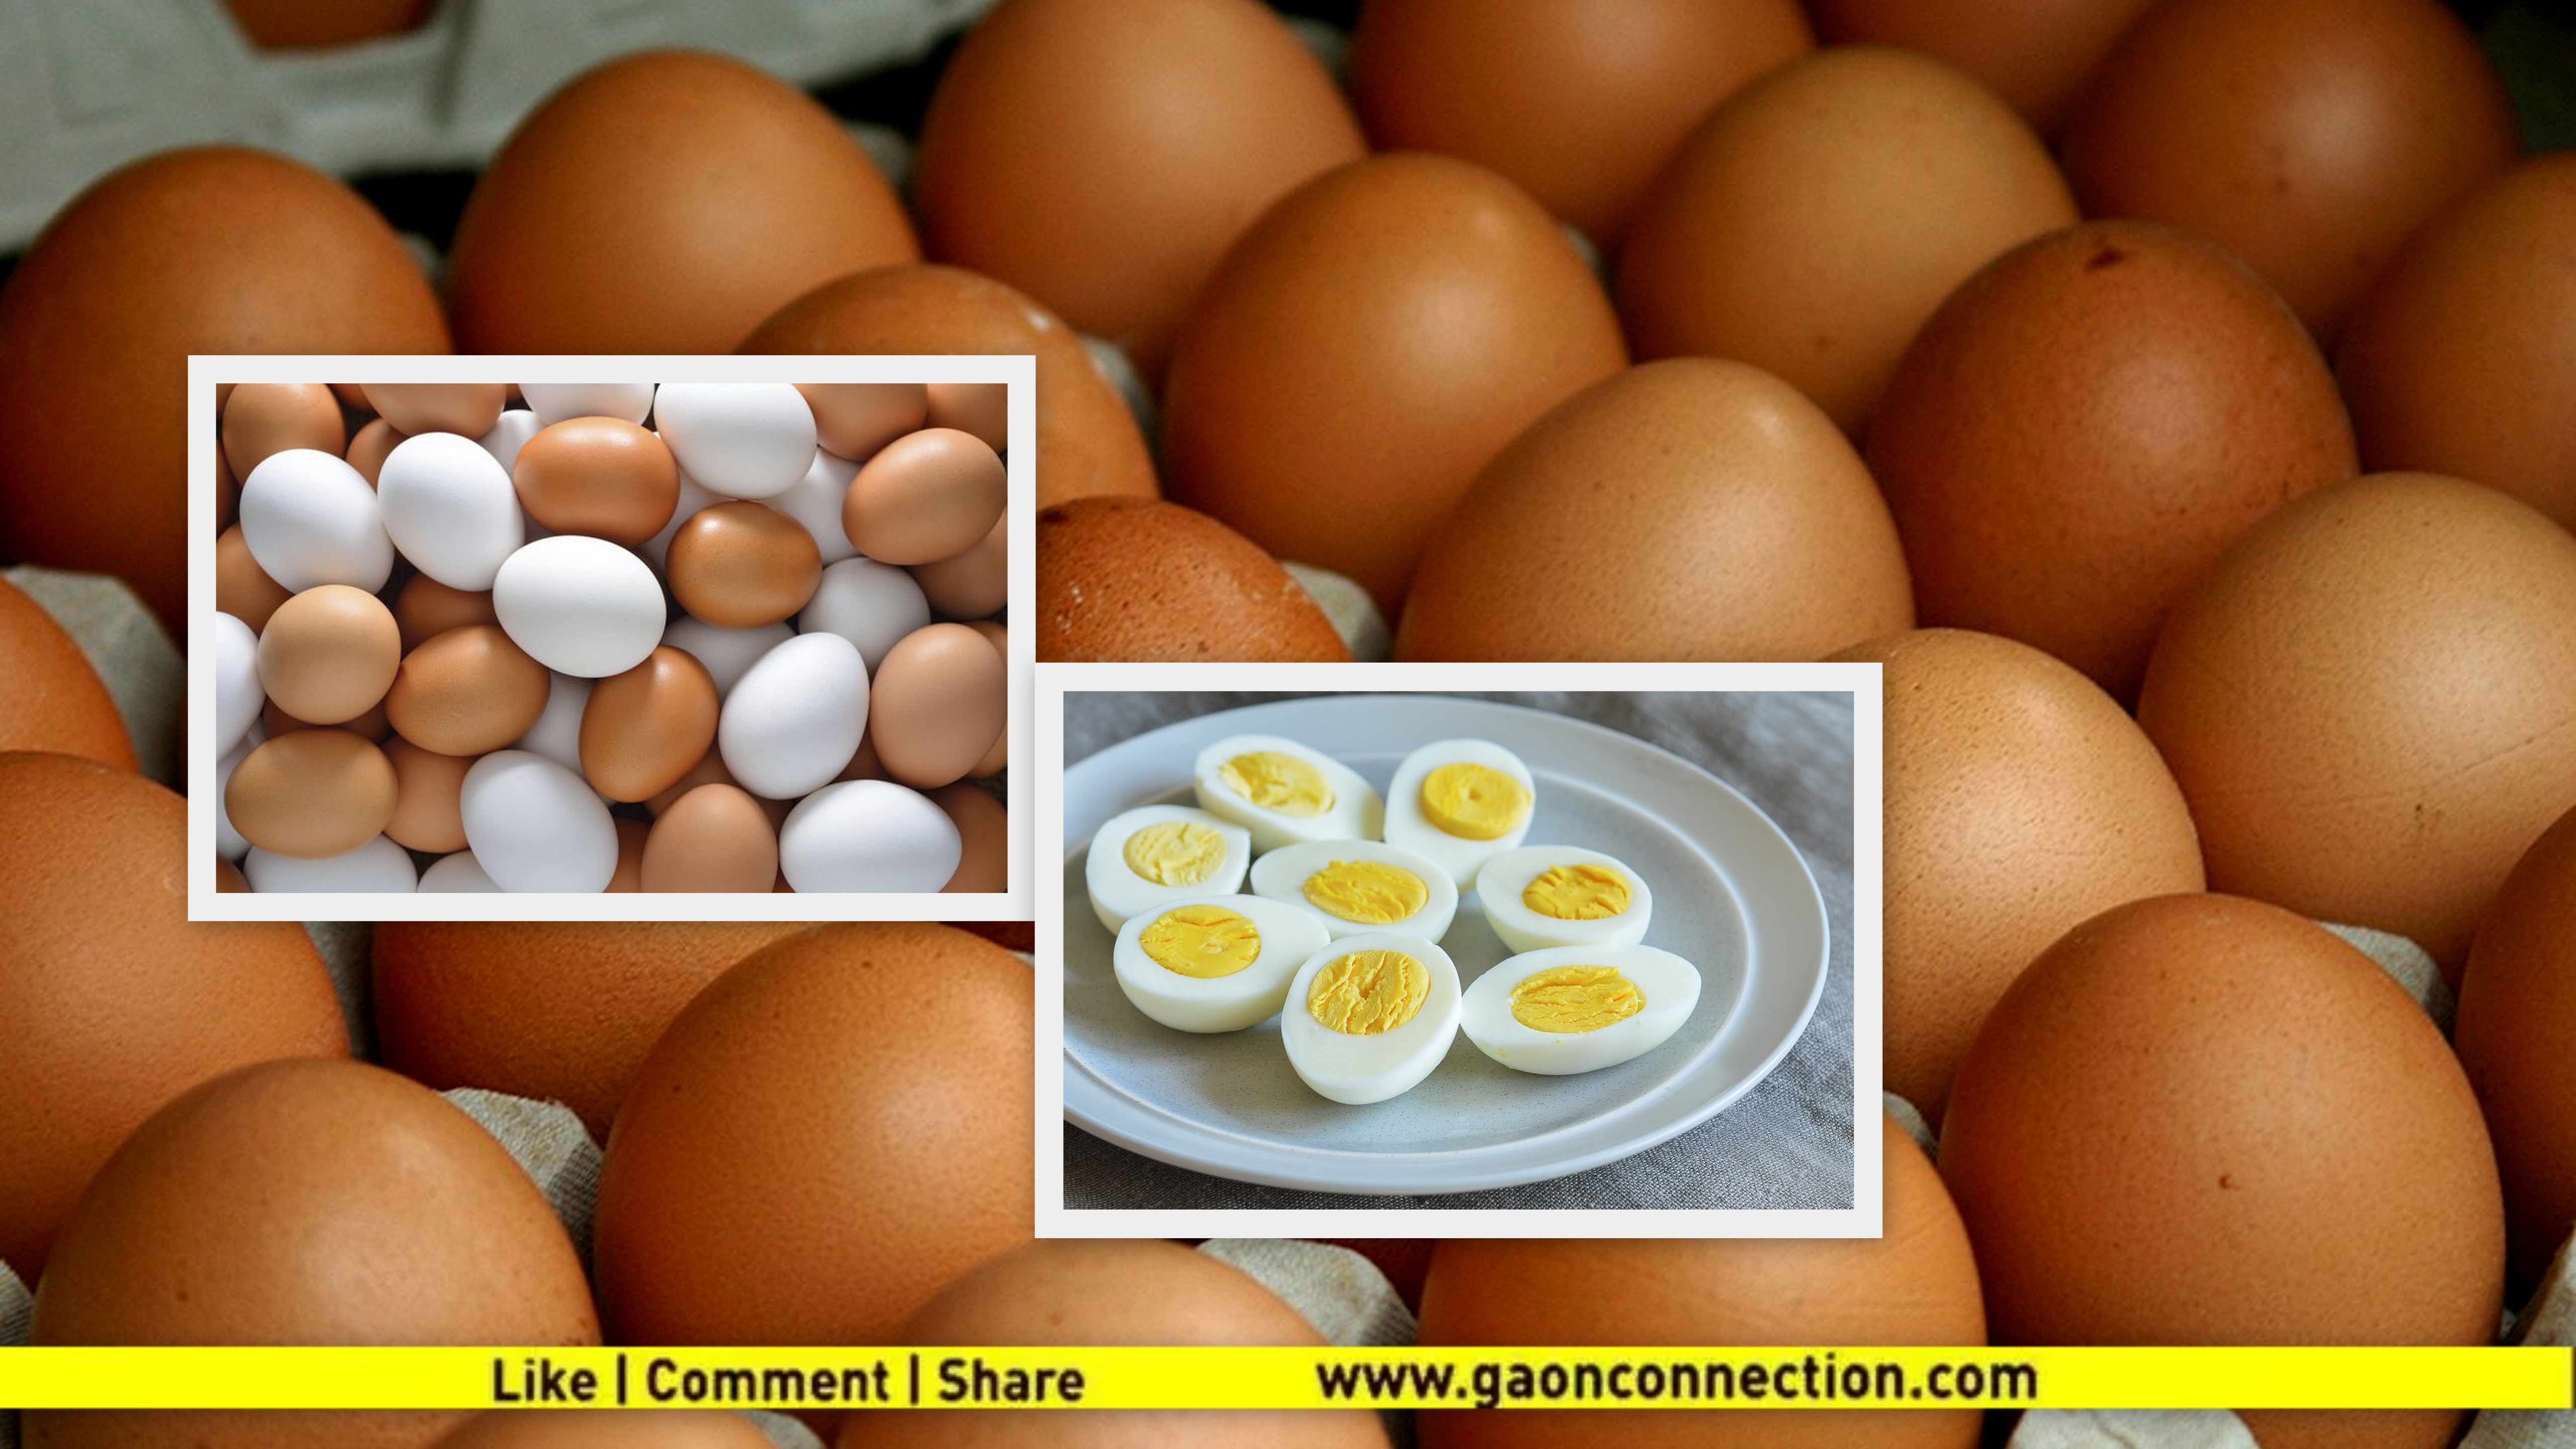 देसी और पोल्ट्री फार्म के अंडों में ज्यादा फायदेमंद कौन ?